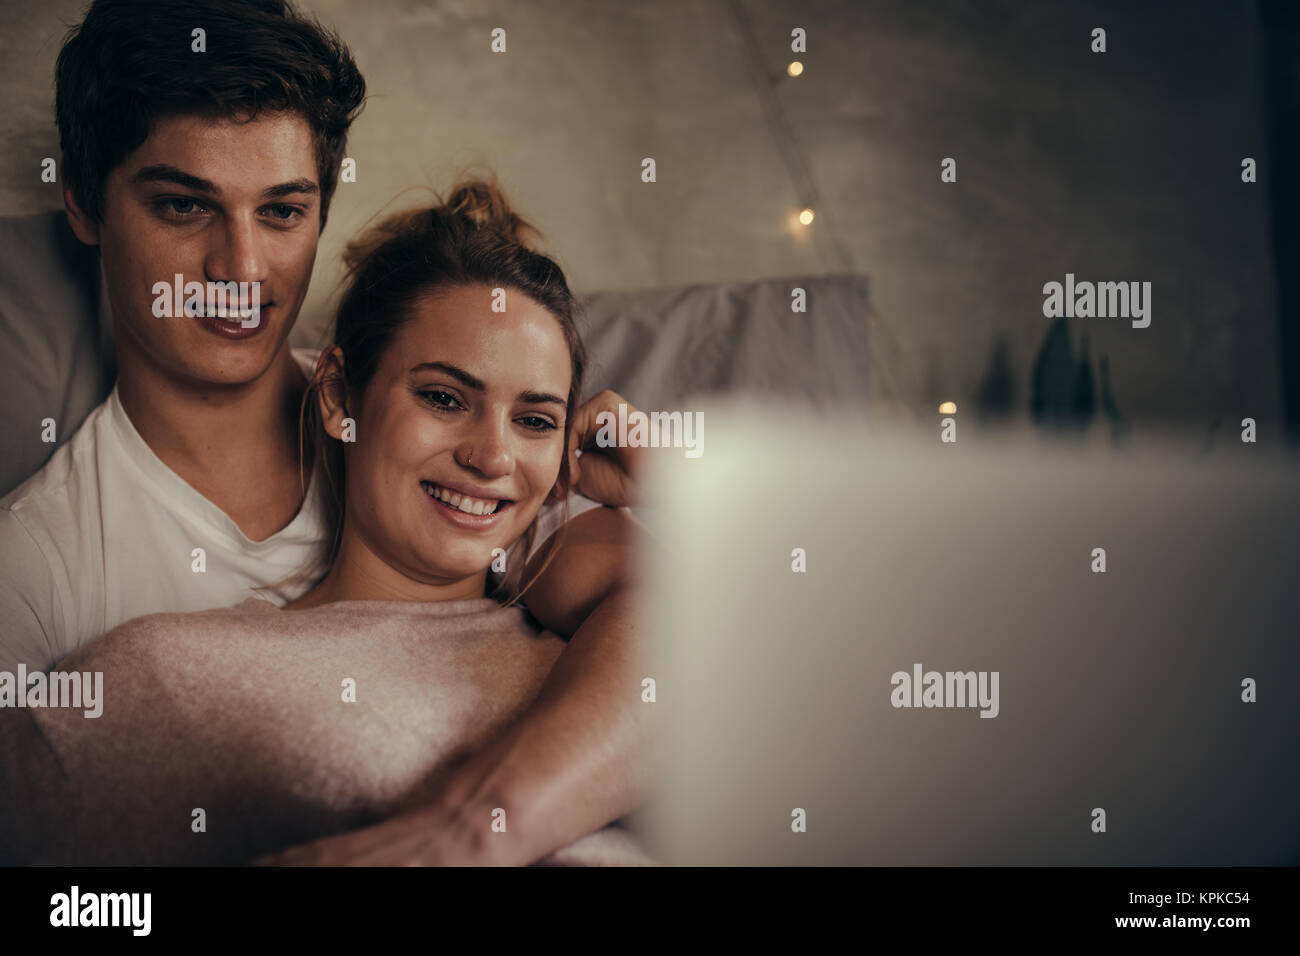 Hygge paar Videos auf Laptop im Schlafzimmer. Lieben jungen Mann und Frau mit Laptop auf dem Bett. Stockfoto